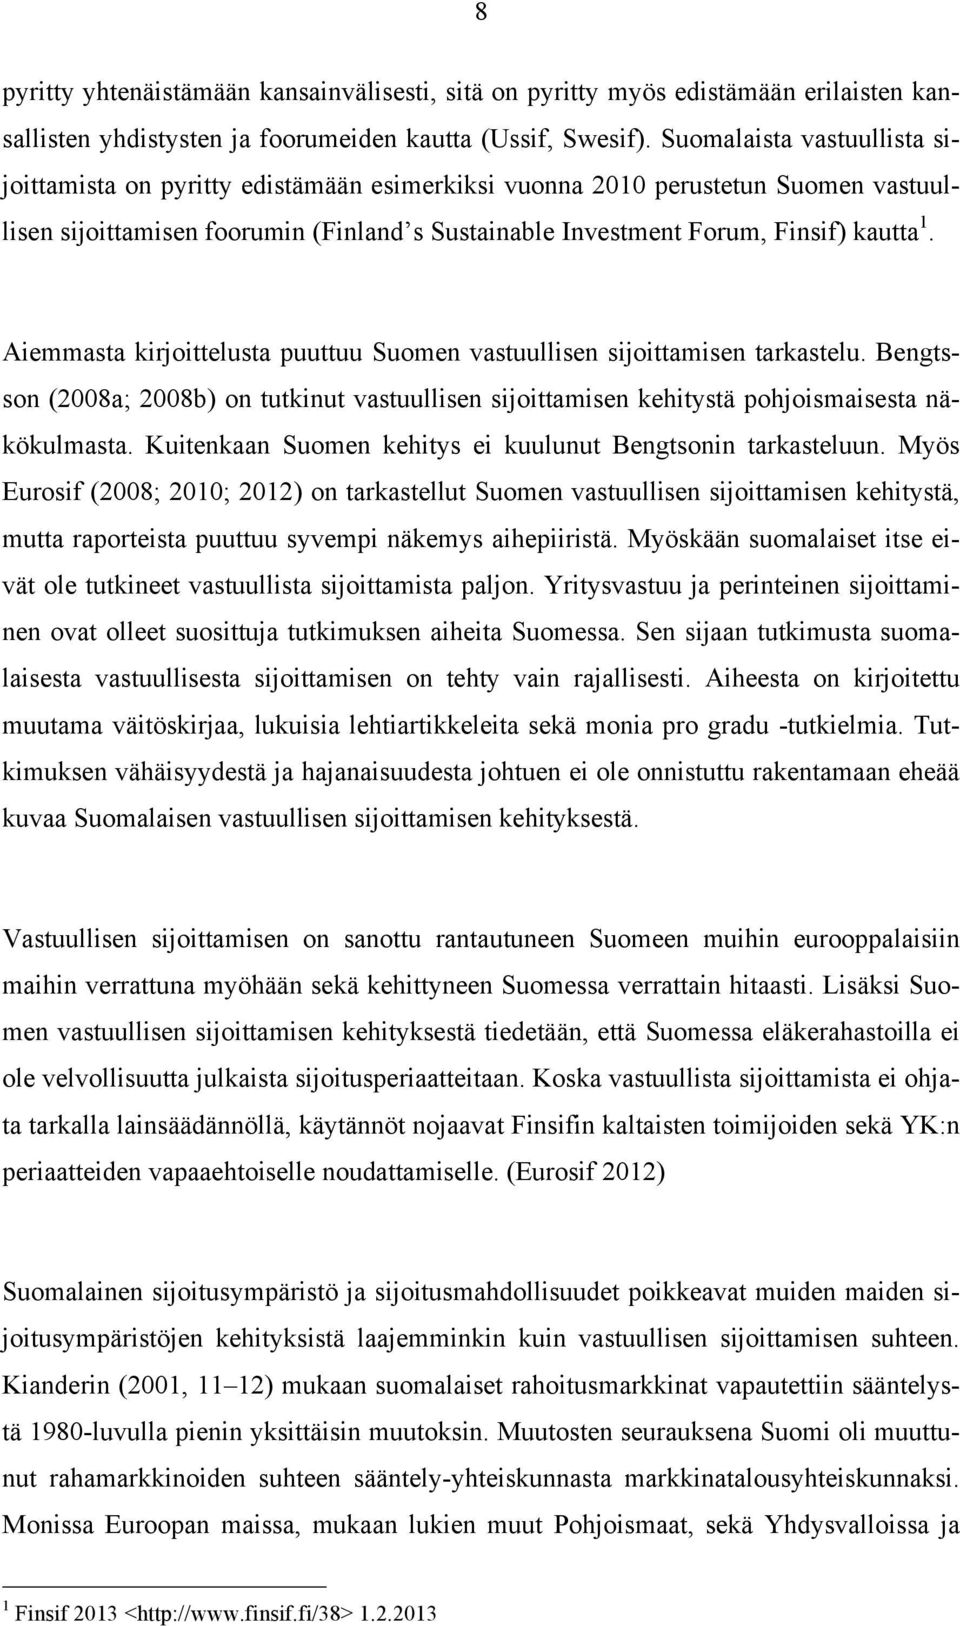 Aiemmasta kirjoittelusta puuttuu Suomen vastuullisen sijoittamisen tarkastelu. Bengtsson (2008a; 2008b) on tutkinut vastuullisen sijoittamisen kehitystä pohjoismaisesta näkökulmasta.